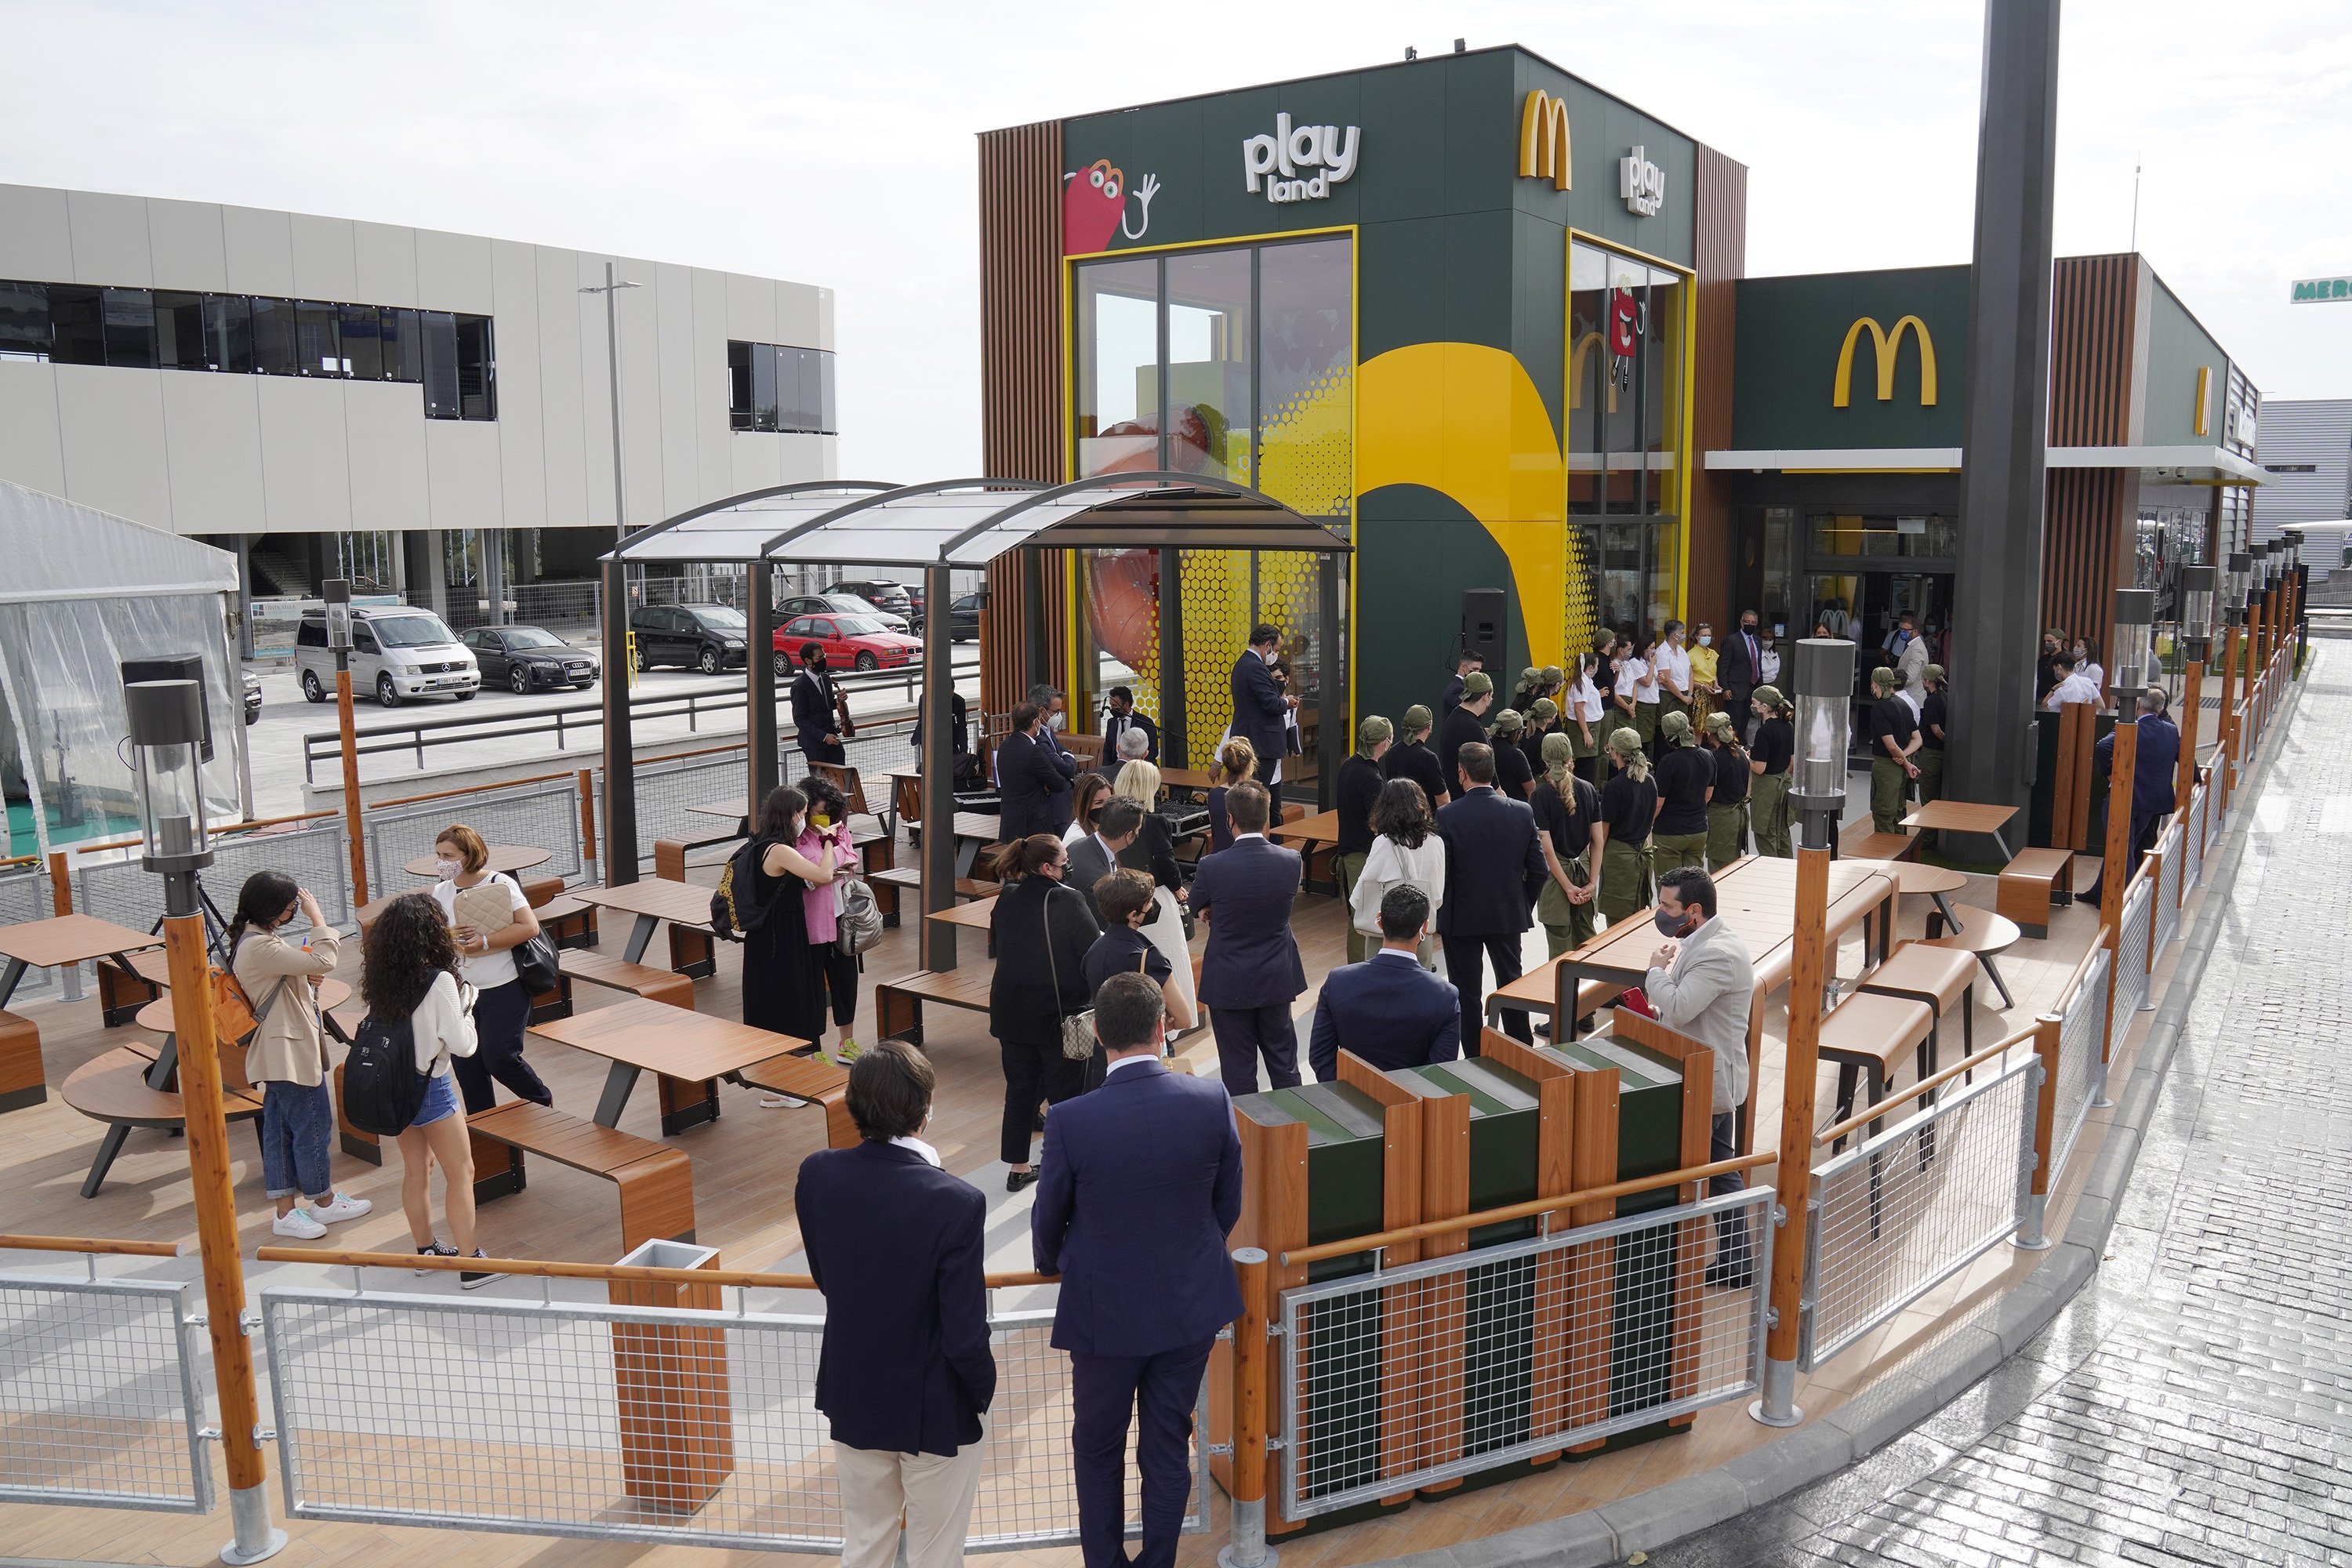 La decadència de Ciutadans: obligats a tancar la seu a Alacant i a reunir-se en un McDonald's